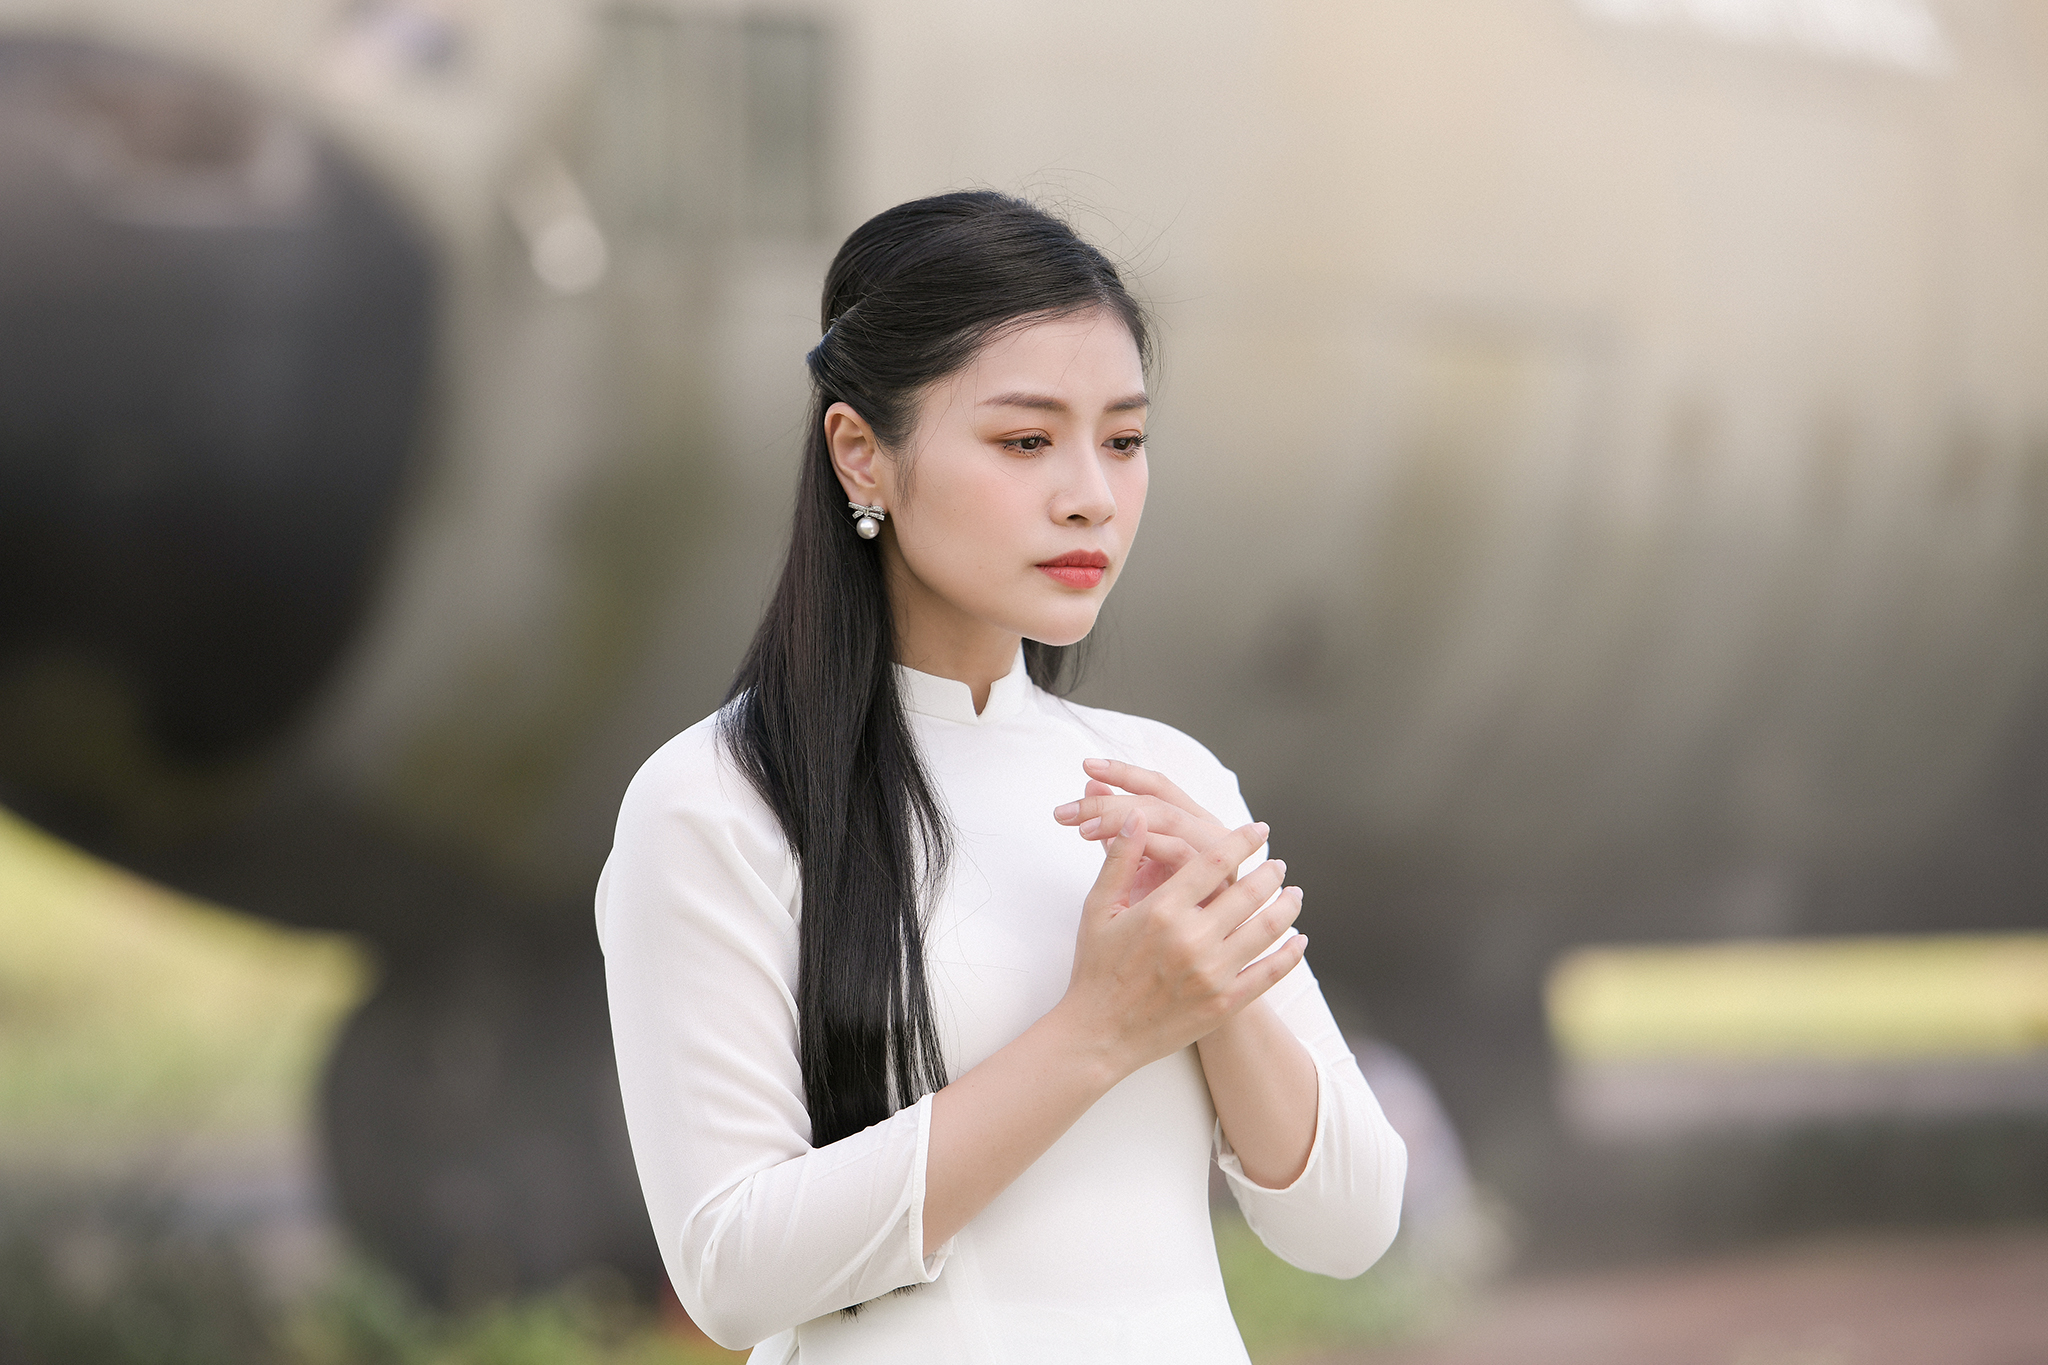 Hãy thưởng thức những bức hình duyên dáng của nữ diễn viên Nguyễn Thu Hằng, người đã chinh phục khán giả bằng sự năng động, sáng tạo và phong cách diễn xuất đầy tình cảm.